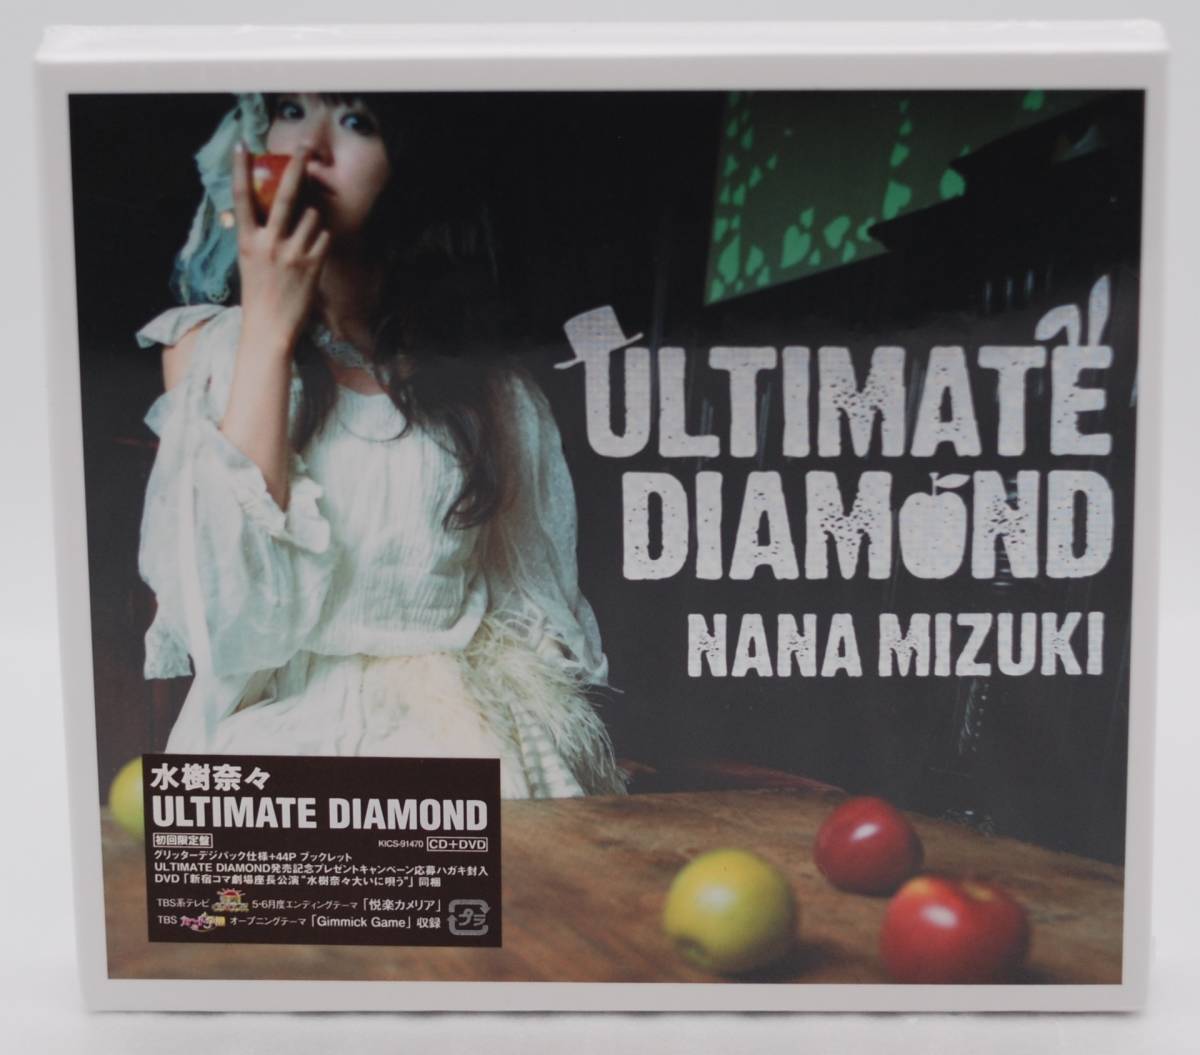 [ новый товар ] вода ...CD+DVD[ULTIMATE DIAMOND первый раз ограничение запись ] поиск :NANA MIZUKI Ultimate бриллиант KICS-91470 нераспечатанный 